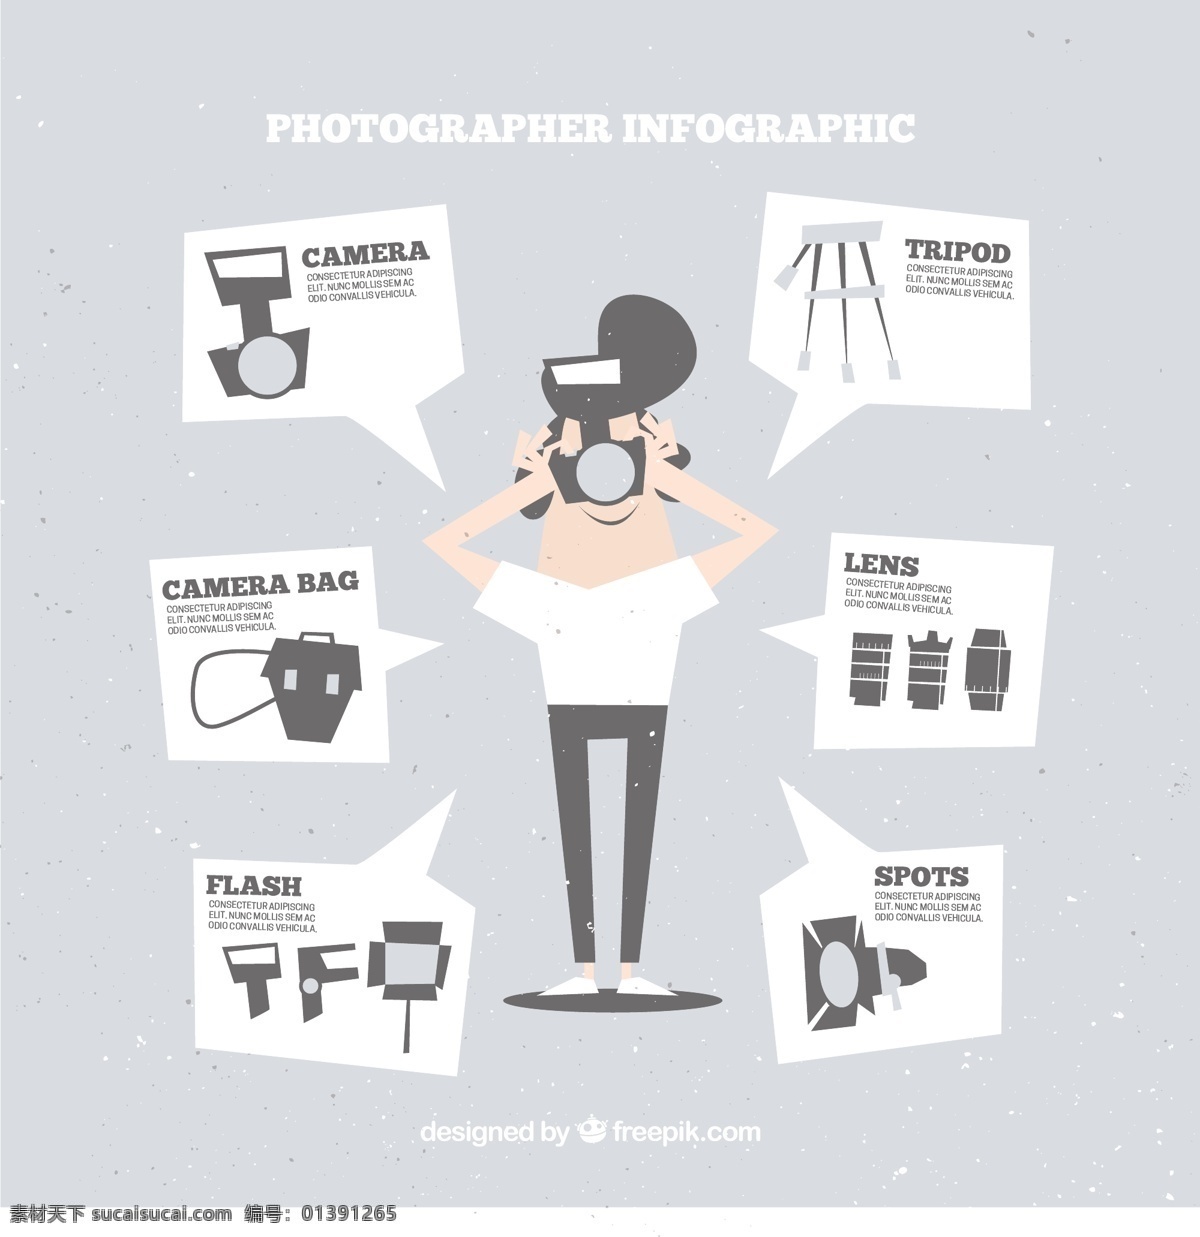 摄影师 信息 图表 信息图 相机 技术 照片 美术 平面设计 搞笑 创意 工作室 专业 创新 记者 拍摄 器材 pic